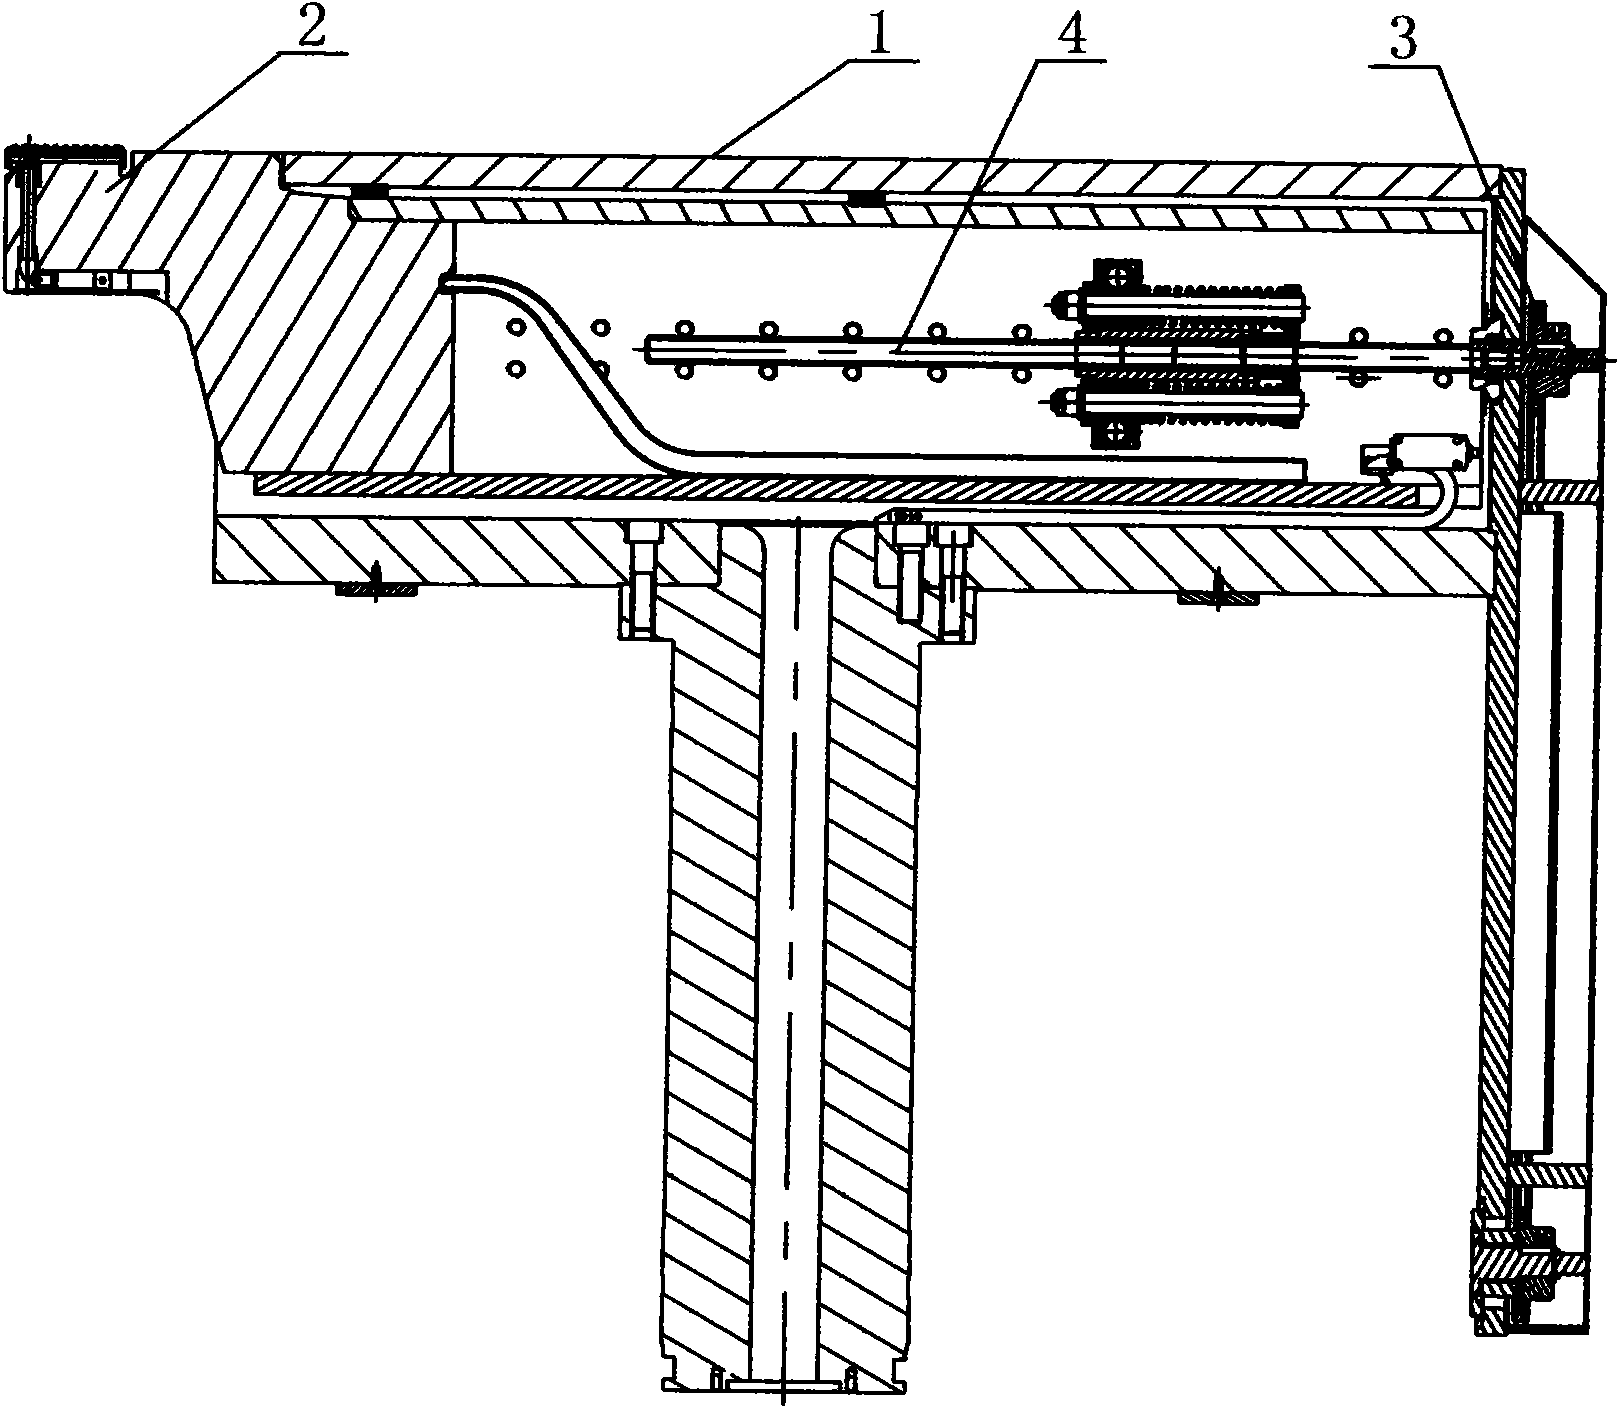 Load transverse adjusting mechanism for bilateral half-spring type holding head